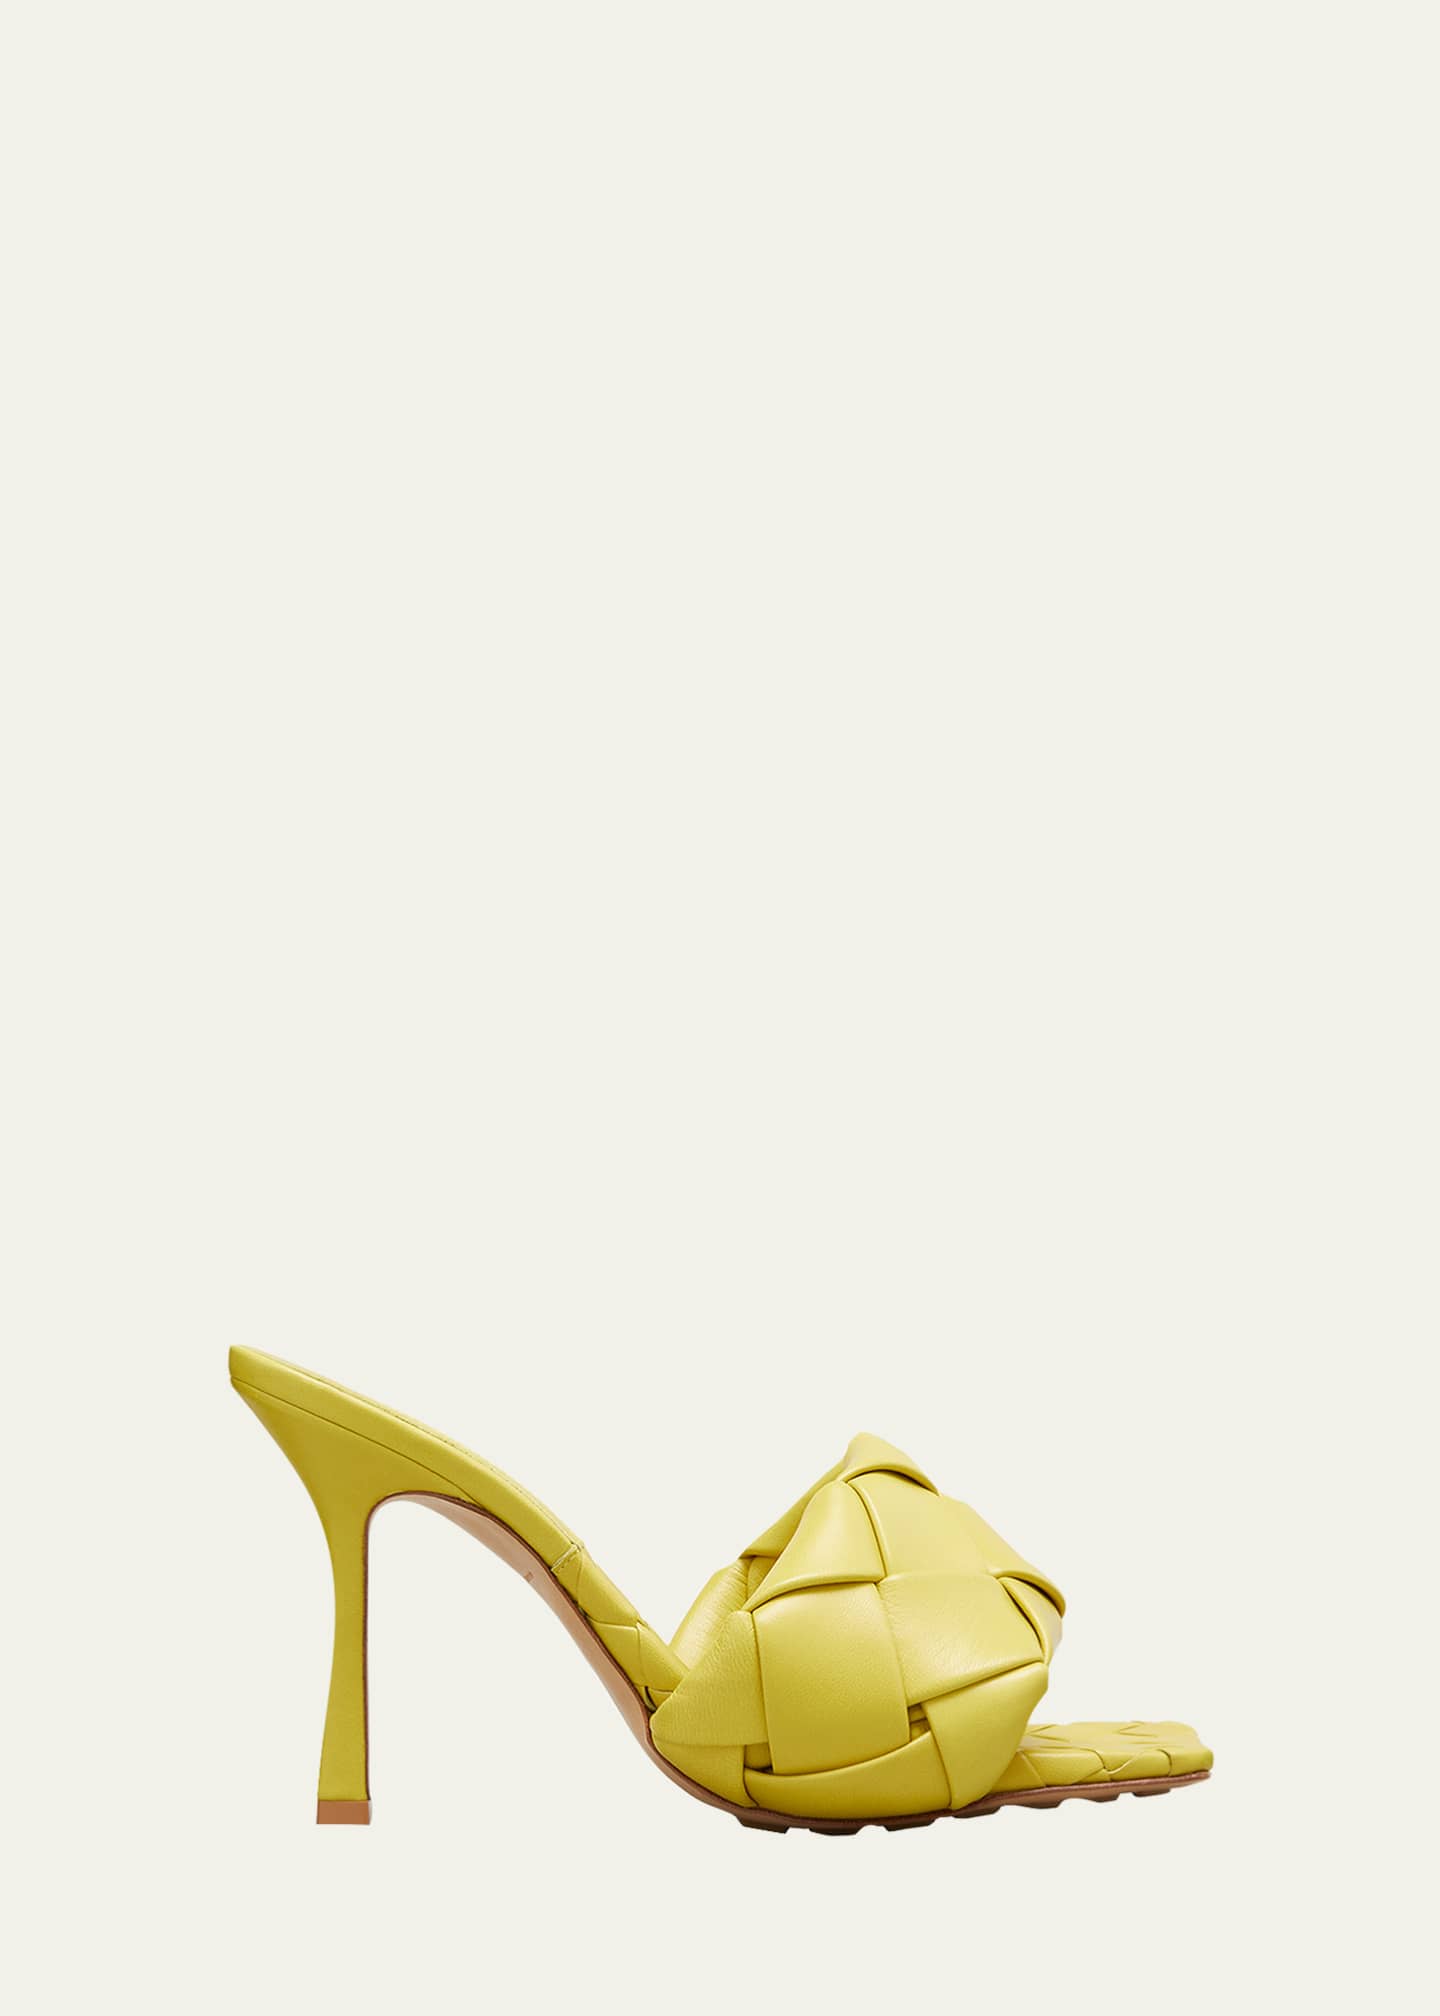 Bottega Veneta The Lido Sandals | Bergdorf Goodman